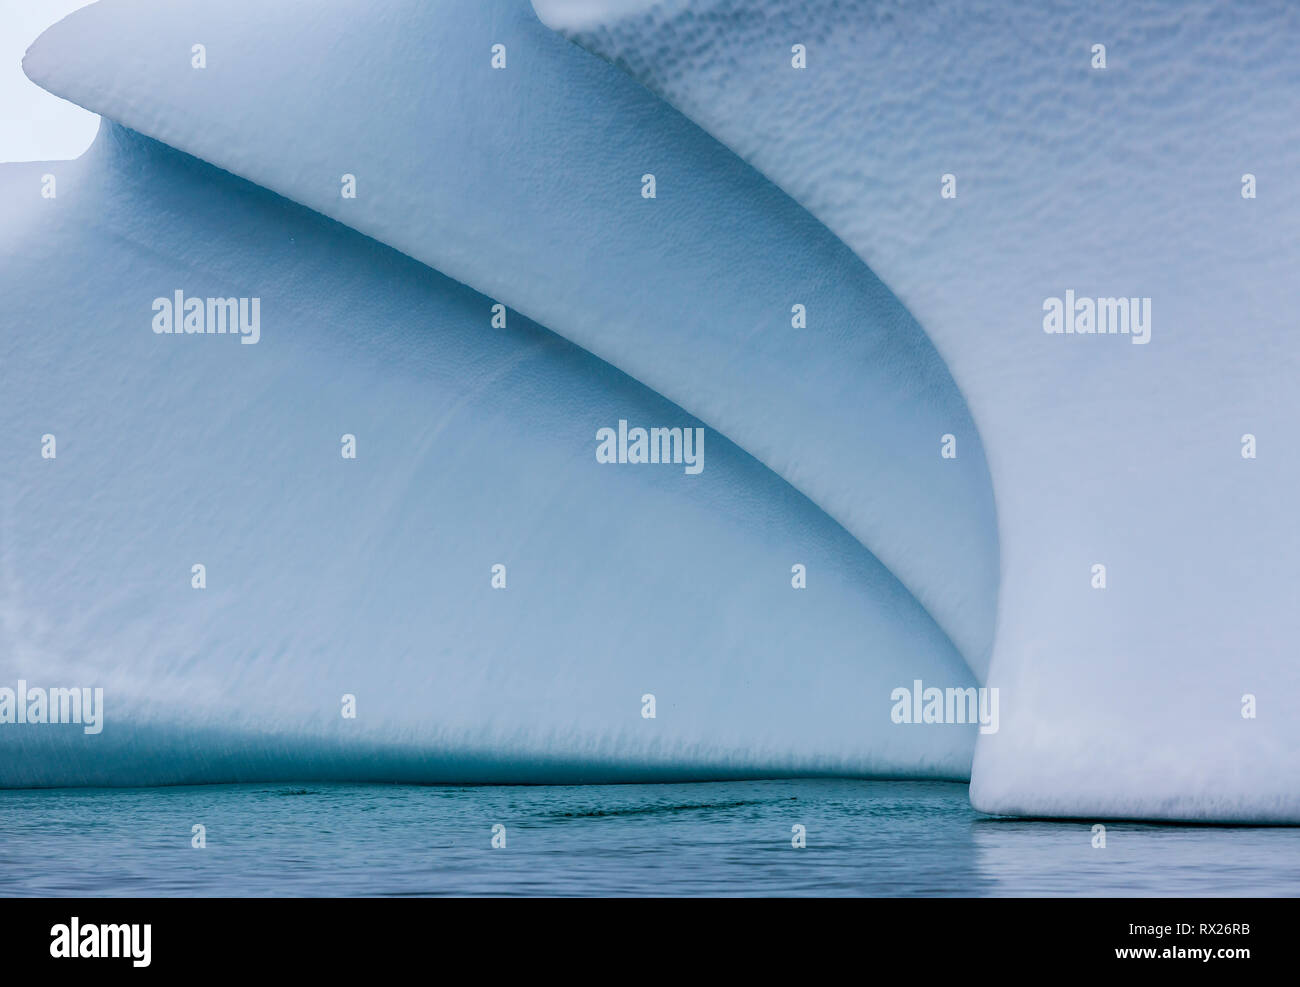 Ein geerdeter Eisberg zeigt wunderschöne weiche geschwungene Linien, während er sich langsam im flachen Wasser in der Nähe von Pleneau Island verschlechtert. Antarktische Halbinsel, Antarktis. Stockfoto